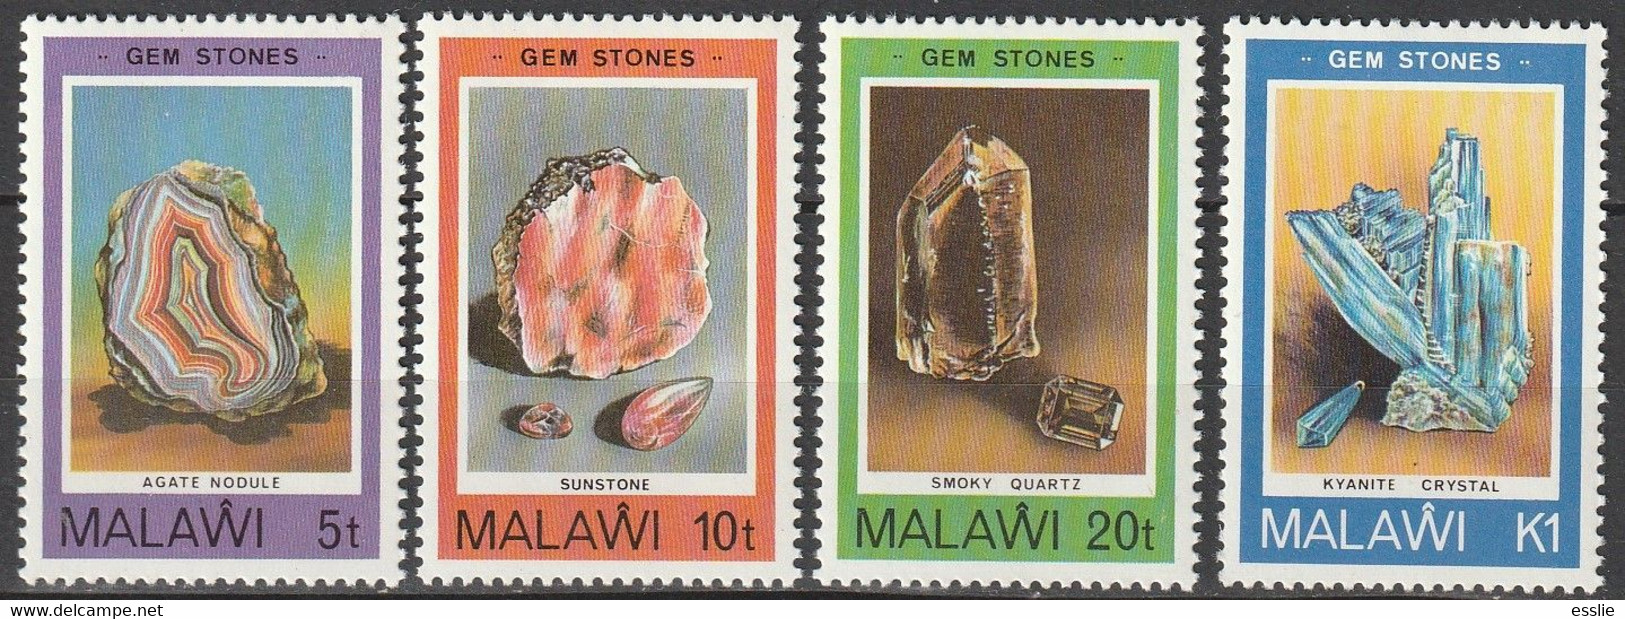 Malawi - 1980 - Minerals Gem Stones Mineralien - Minéraux